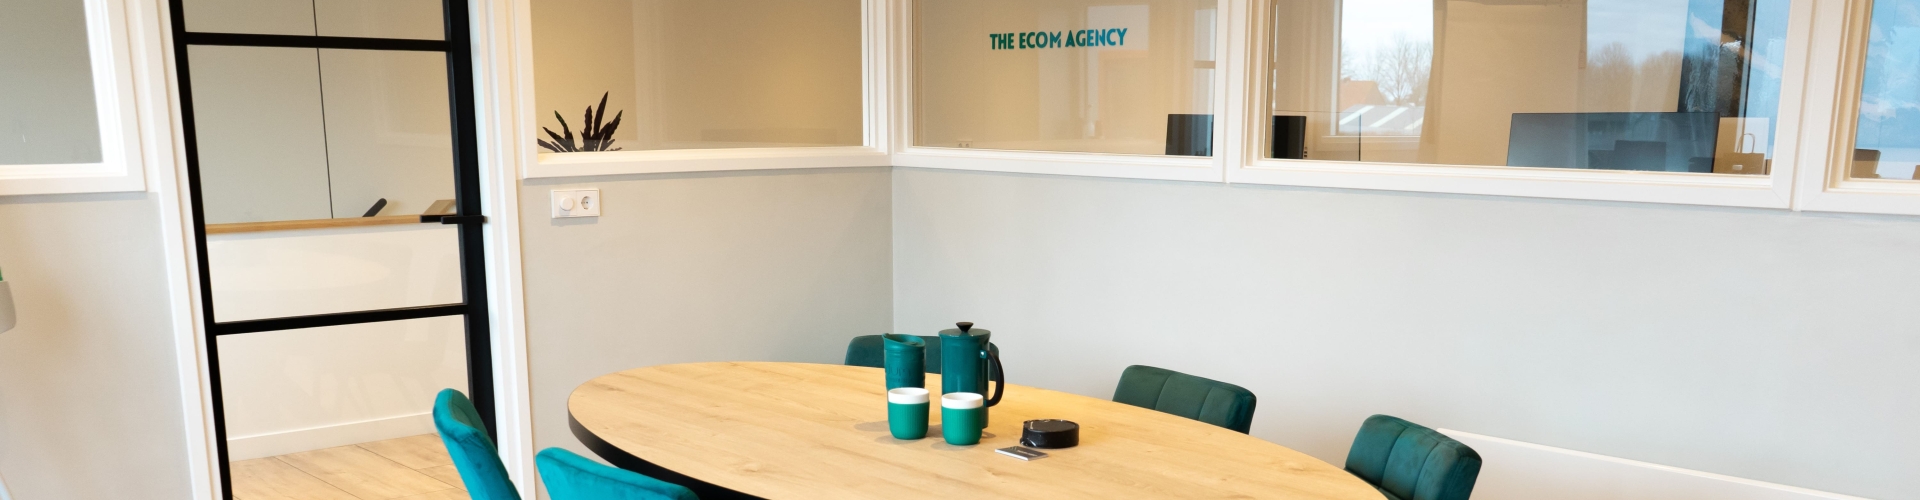 The Ecom Agency kantoor